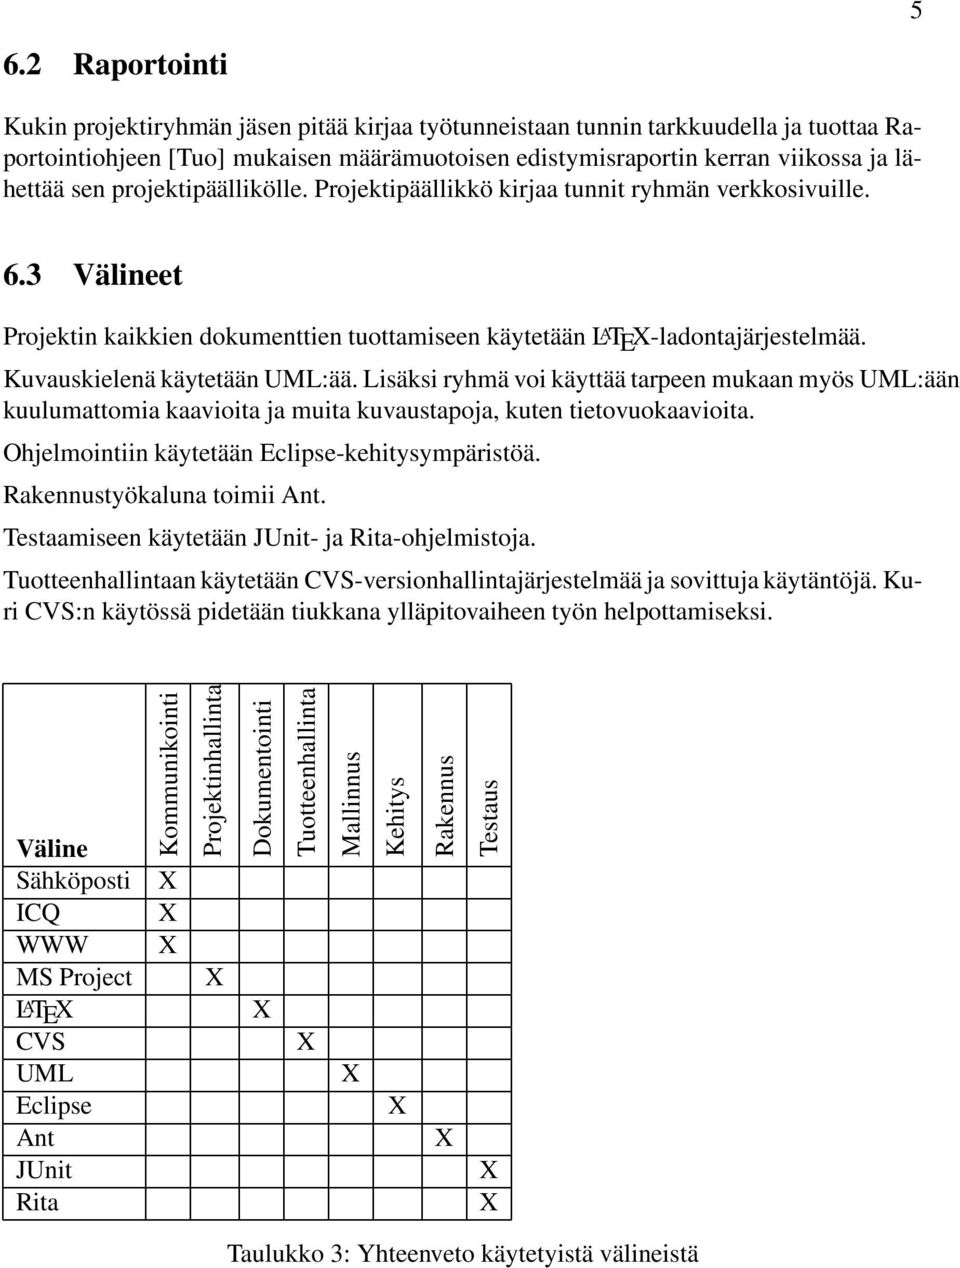 Kuvauskielenä käytetään UML:ää. Lisäksi ryhmä voi käyttää tarpeen mukaan myös UML:ään kuulumattomia kaavioita ja muita kuvaustapoja, kuten tietovuokaavioita.